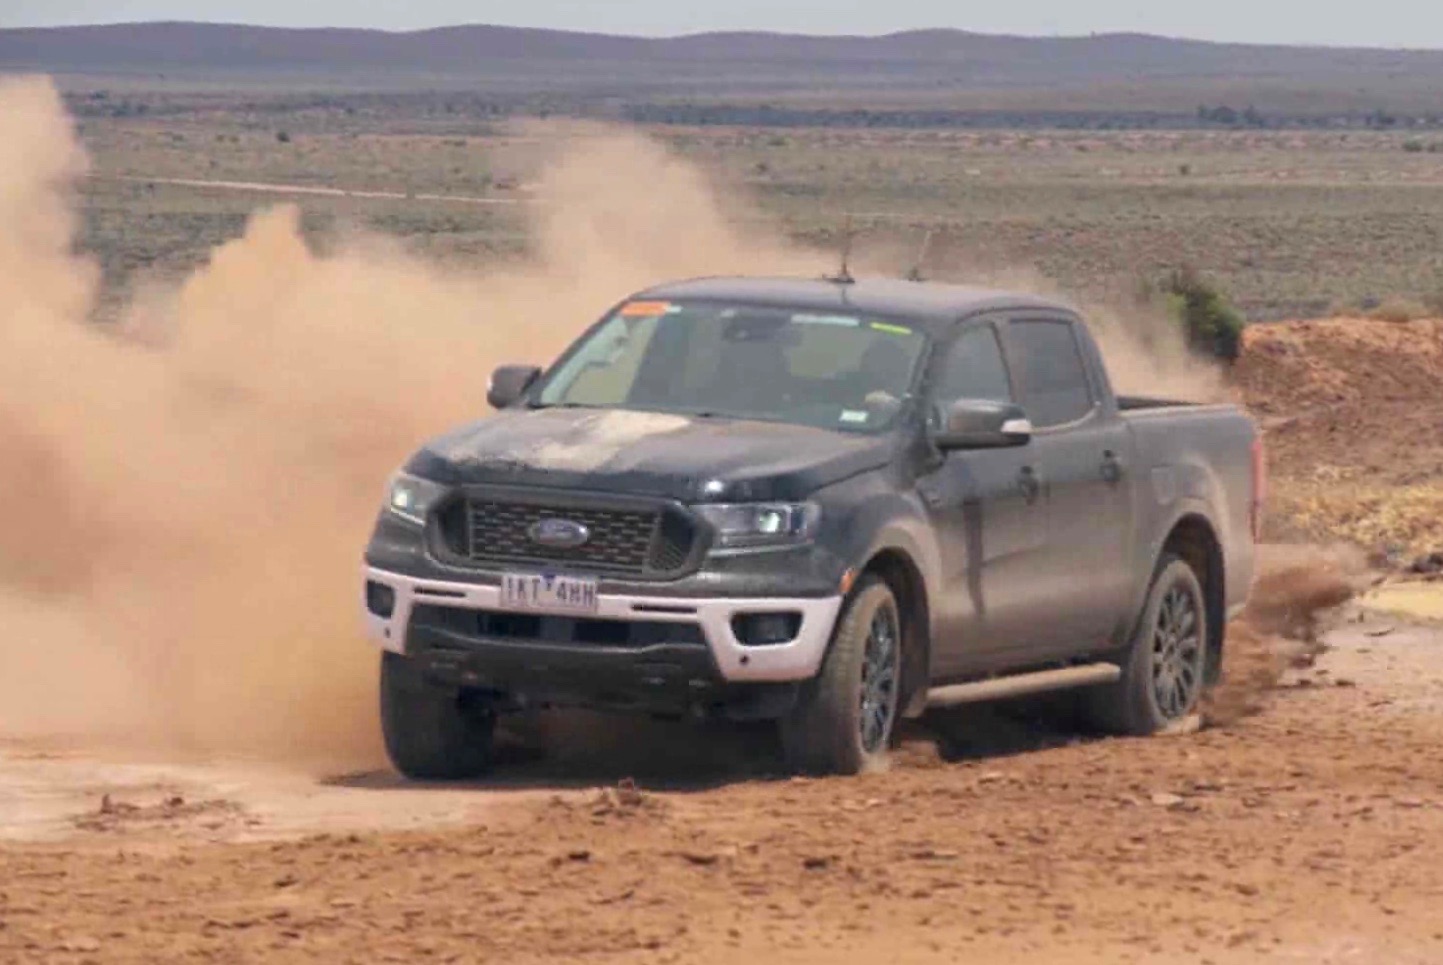 2019 Ford Ranger undergoes tough development testing (video)